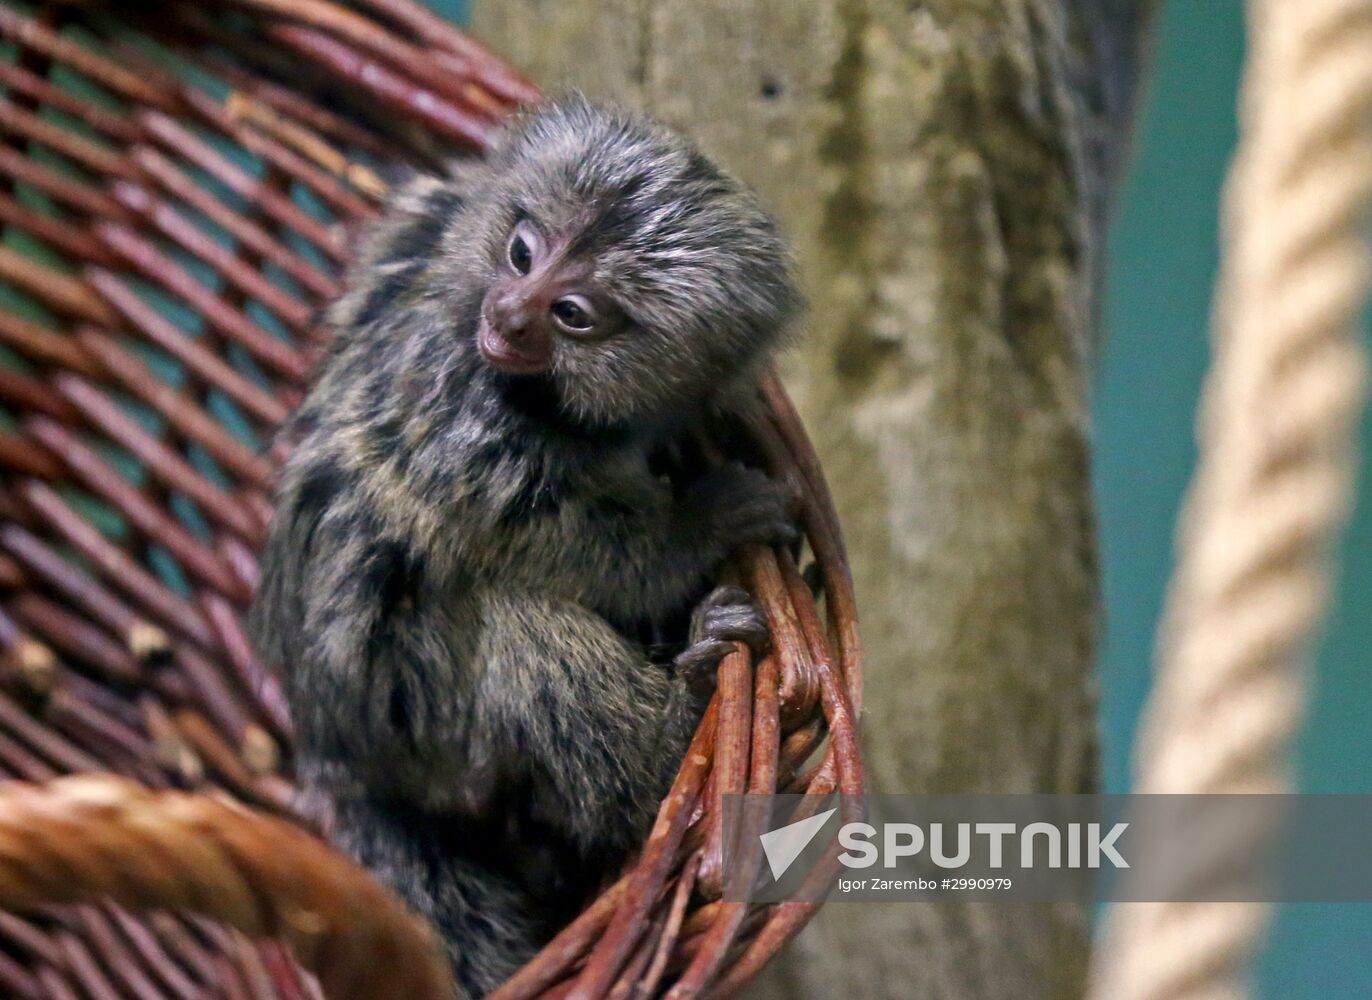 New arrivals at marmoset family at Kaliningrad Zoo